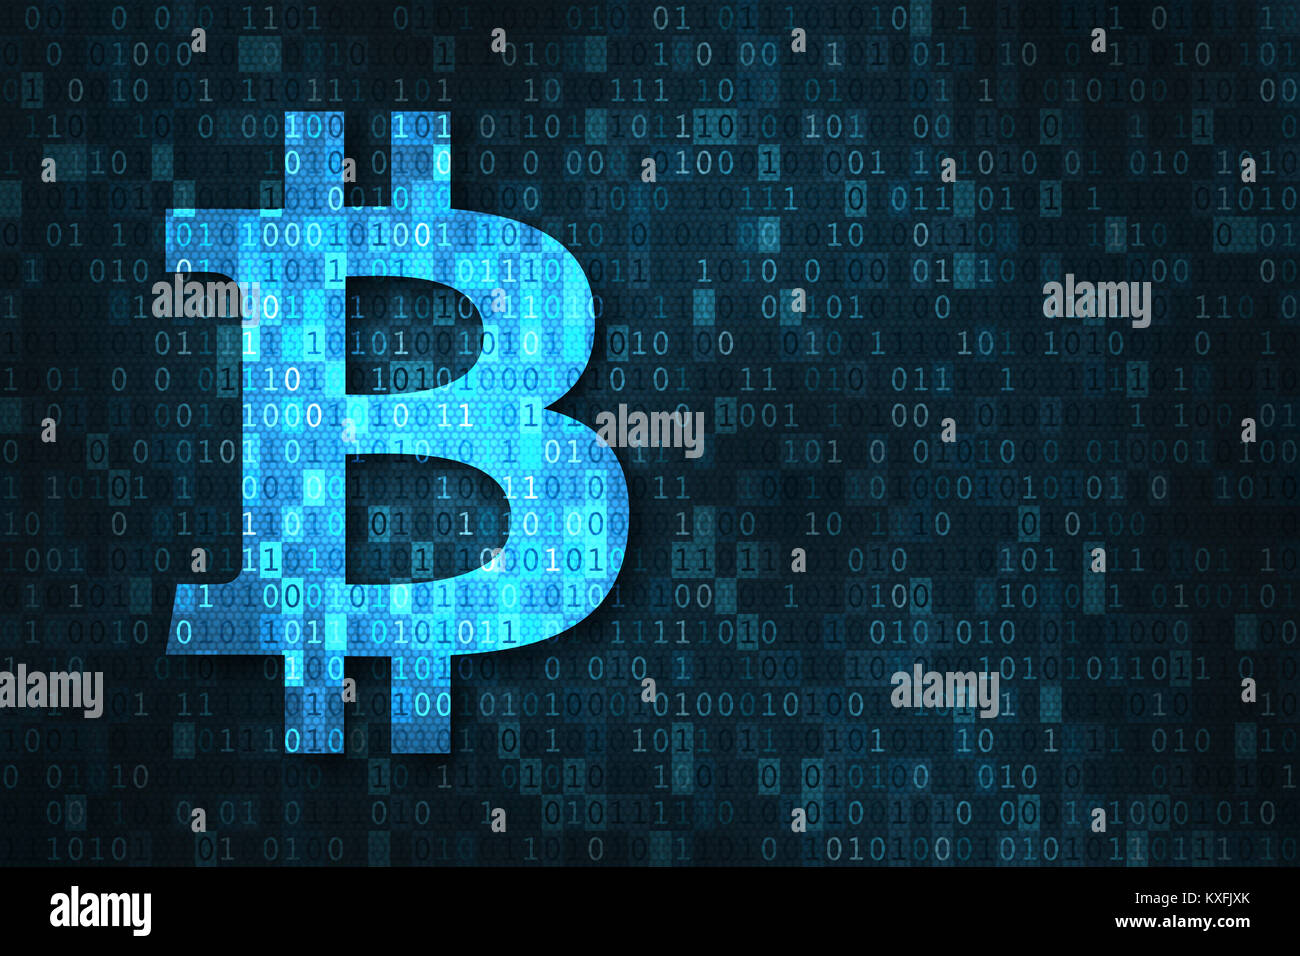 Blockchain cryptocurrency Bitcoin basé sur technologie concept avec symbole monétaire BTC plus de chiffres binaires, code matrix financial et fintech Banque D'Images